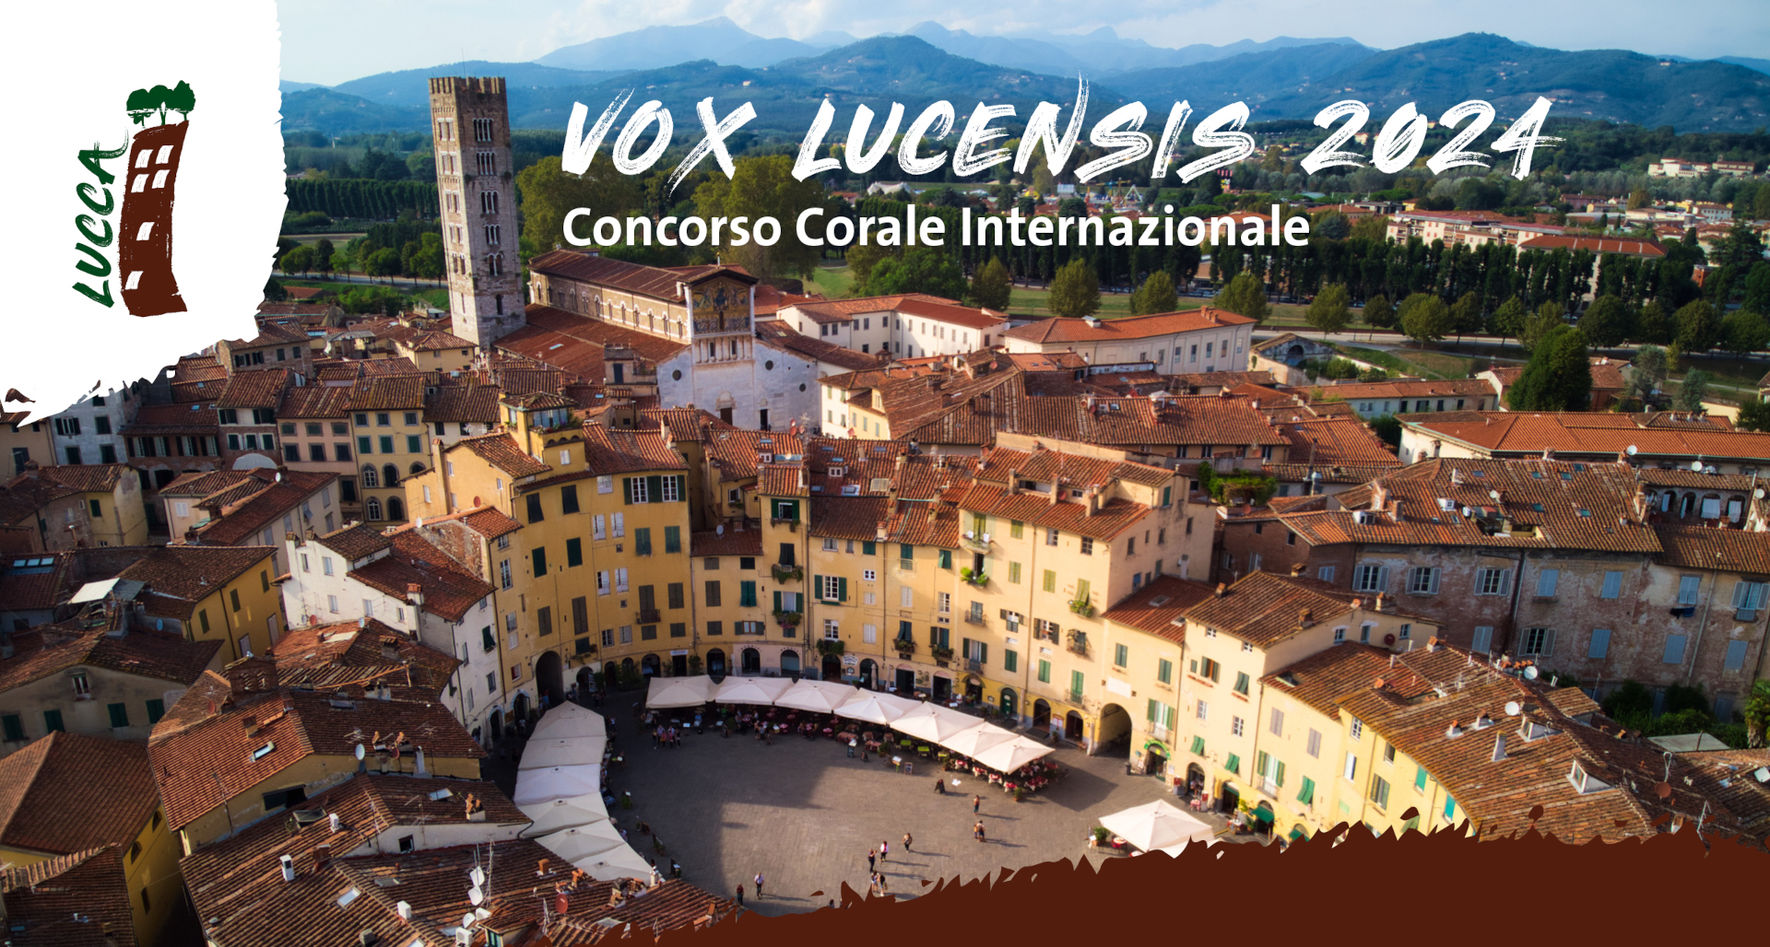 Vox Lucensis - Concorso Corale Internazionale 2024